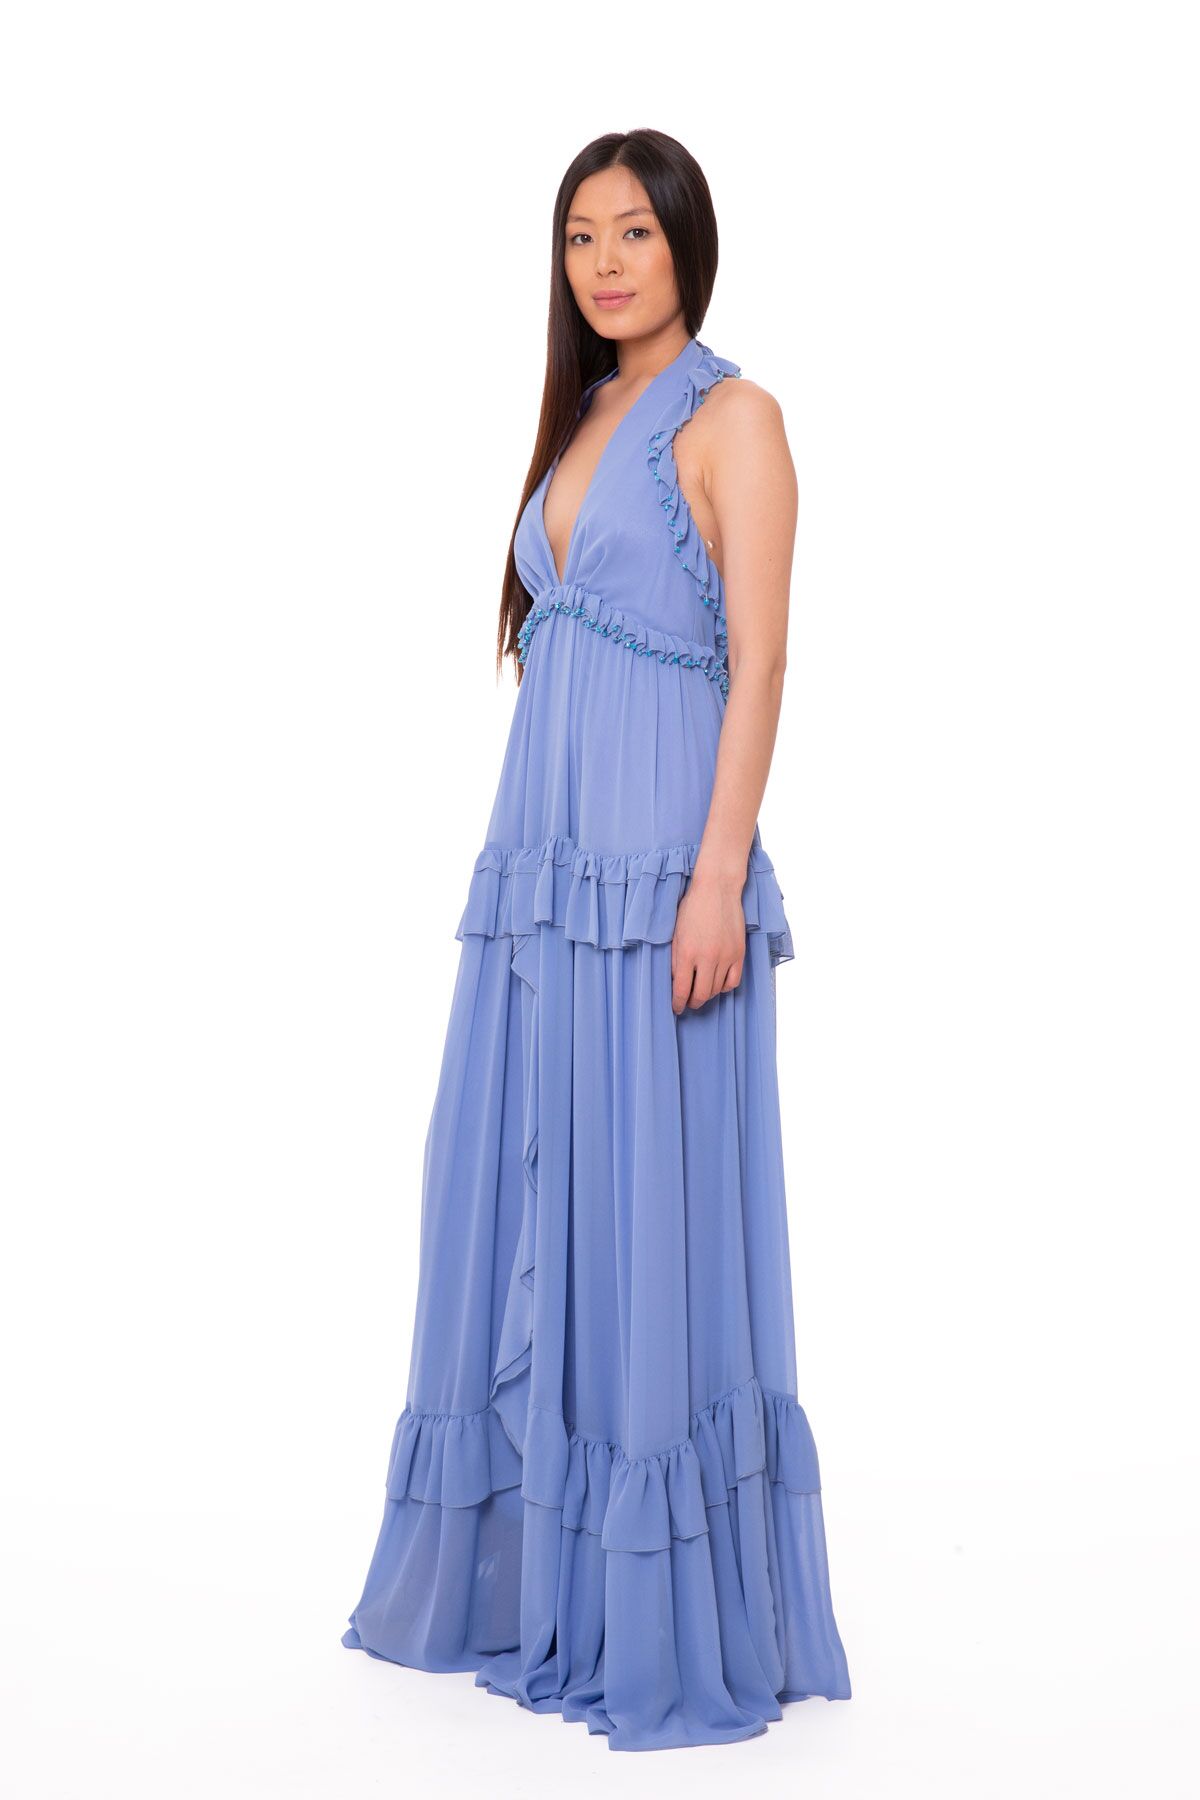 GIZIA - Embroidered Ruffle Chiffon Long Blue Dress